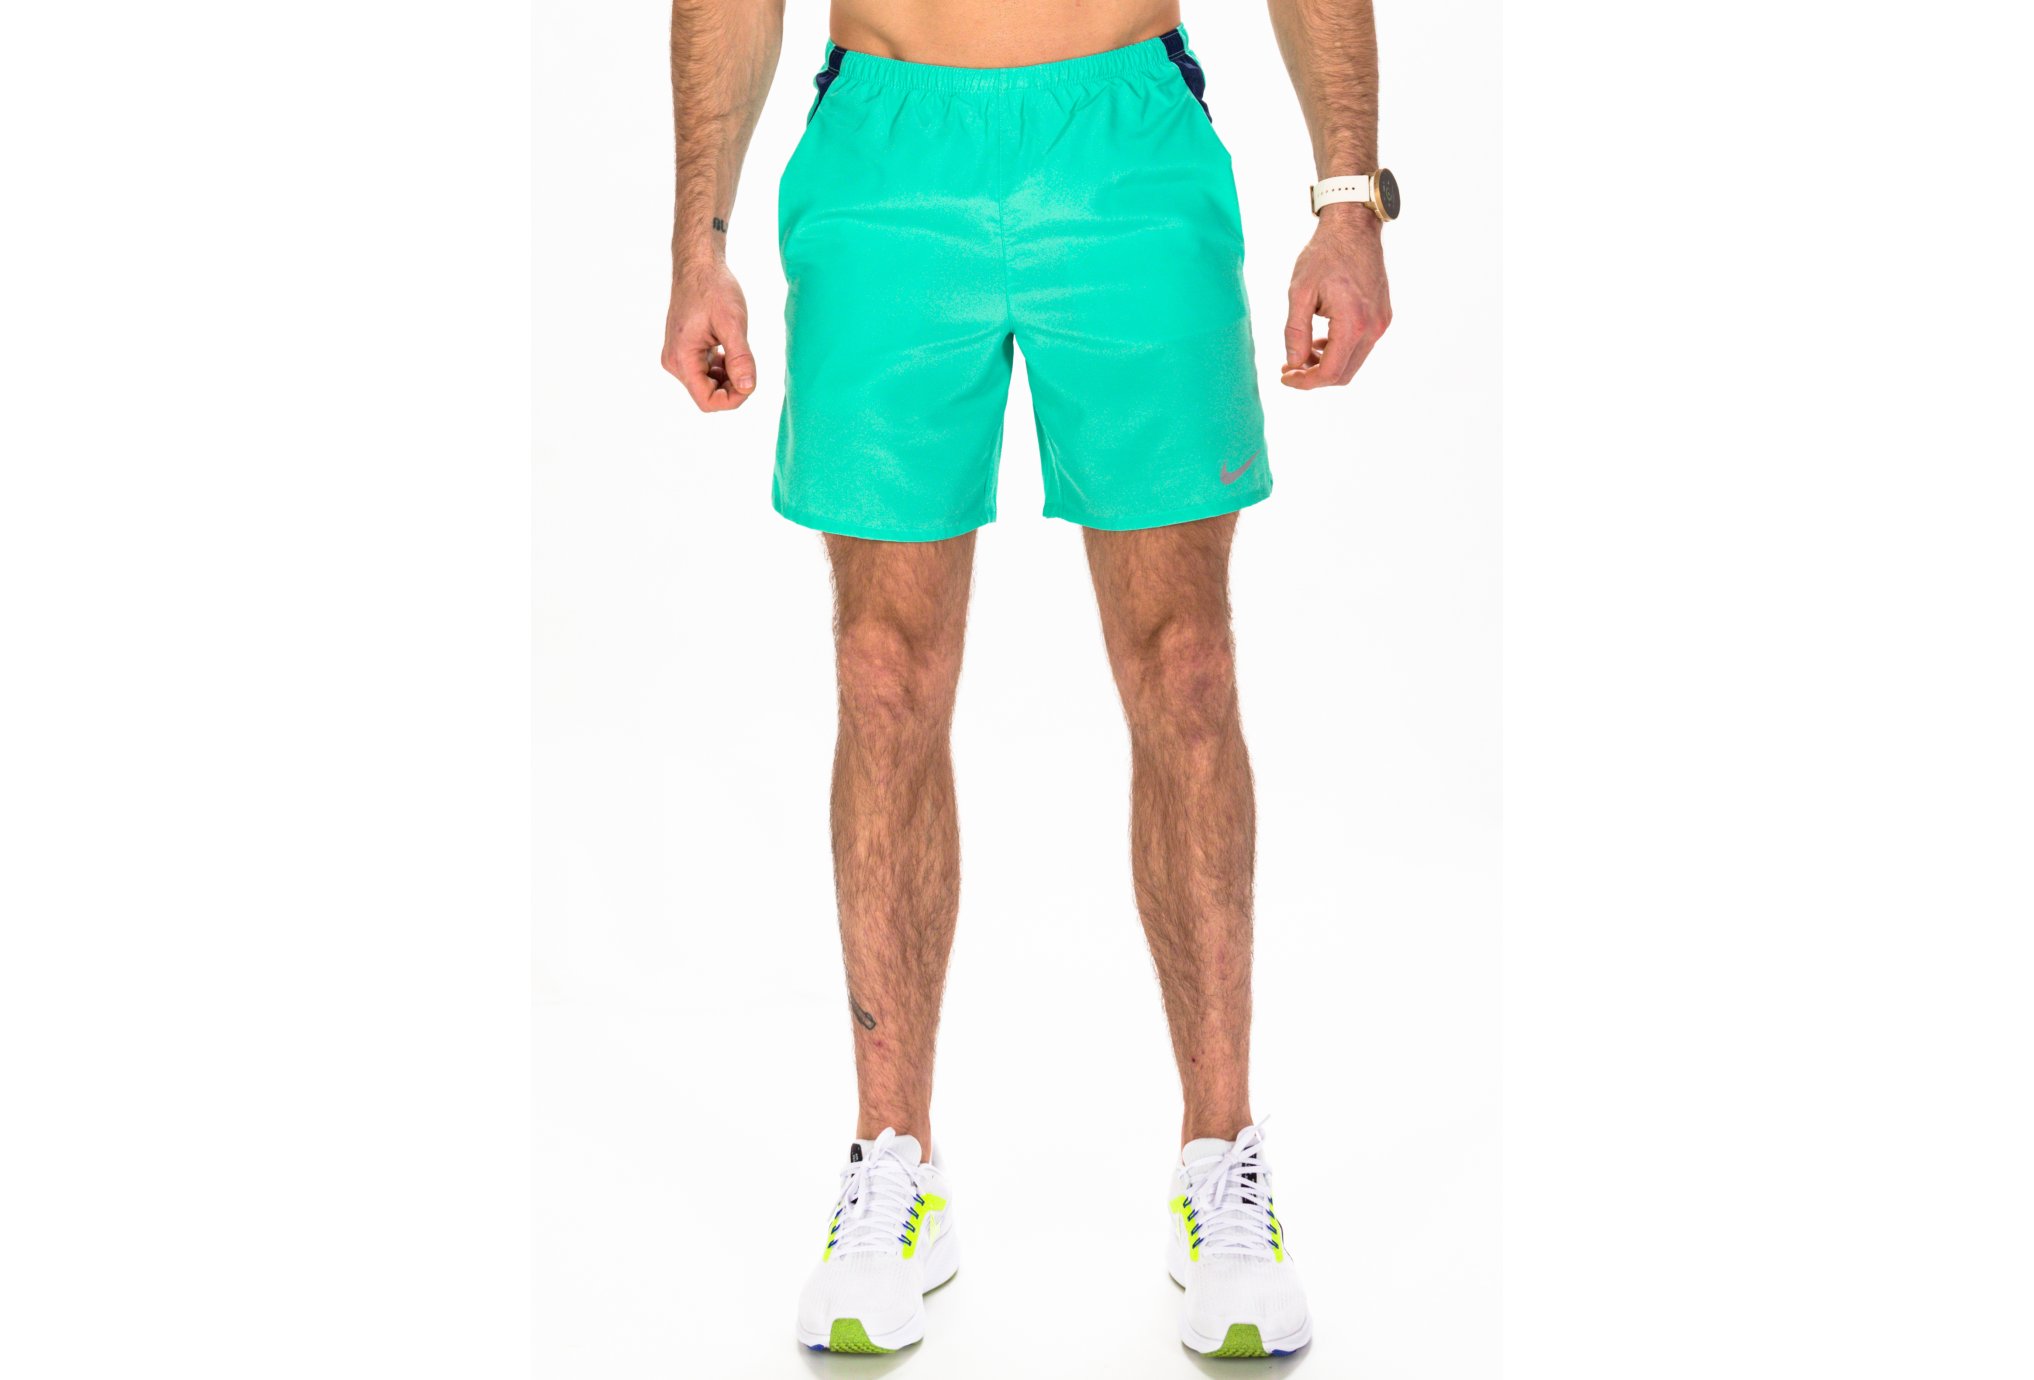 Nike Challenger M vêtement running homme